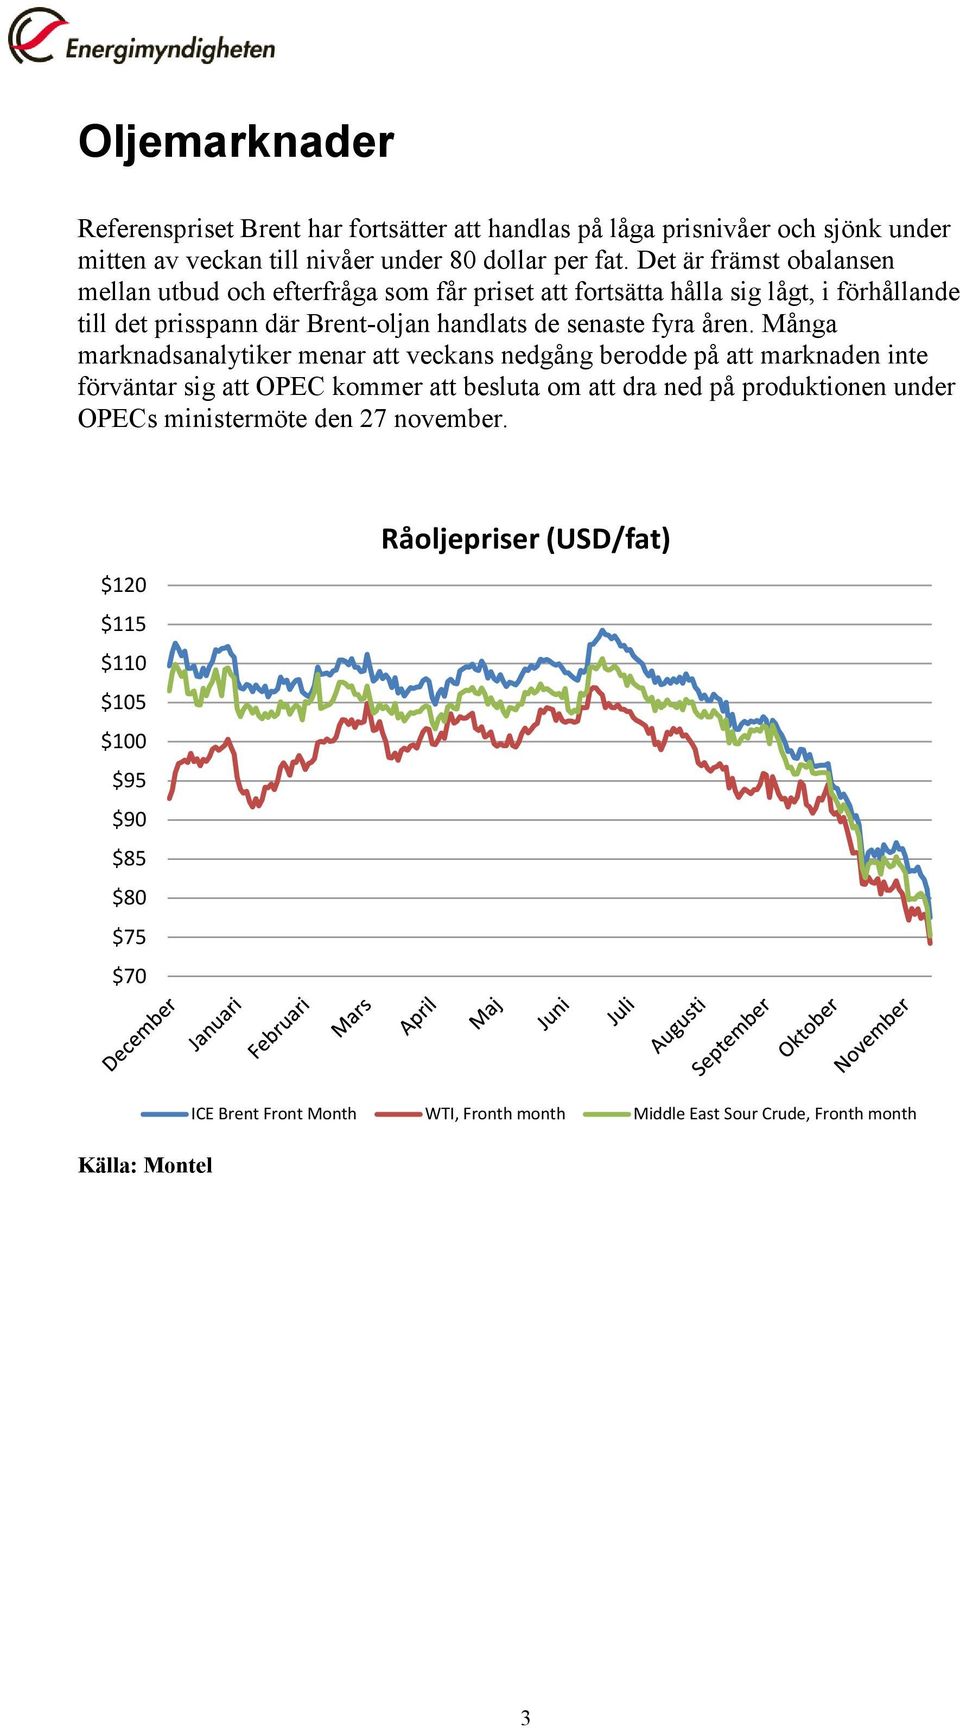 åren. Många marknadsanalytiker menar att veckans nedgång berodde på att marknaden inte förväntar sig att OPEC kommer att besluta om att dra ned på produktionen under OPECs